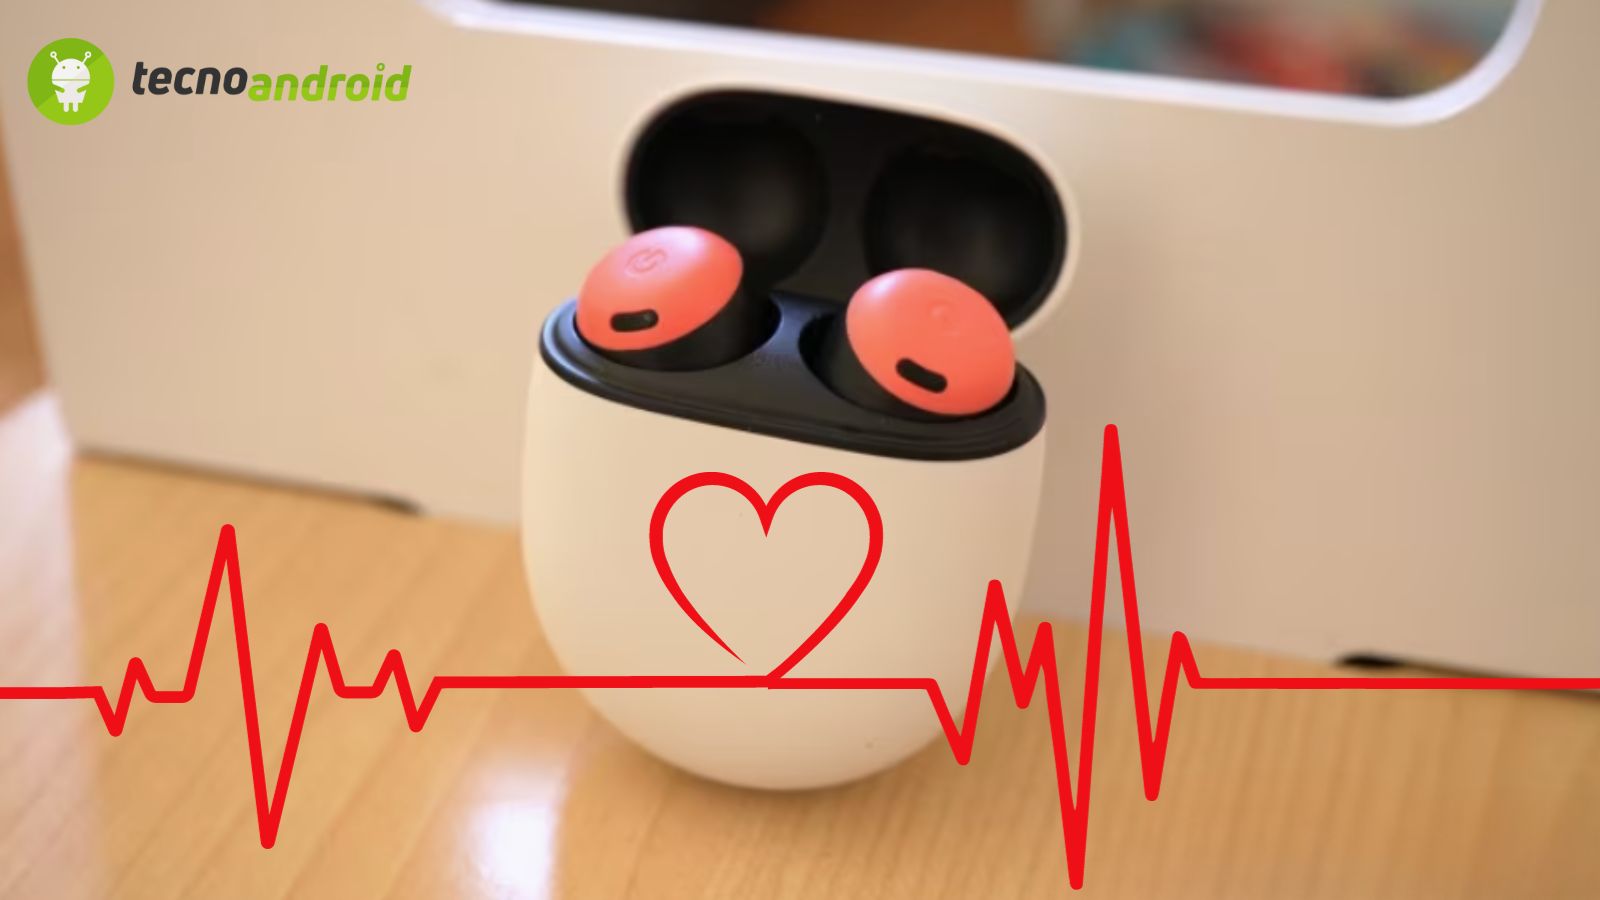 Cuffie google controllo cuore